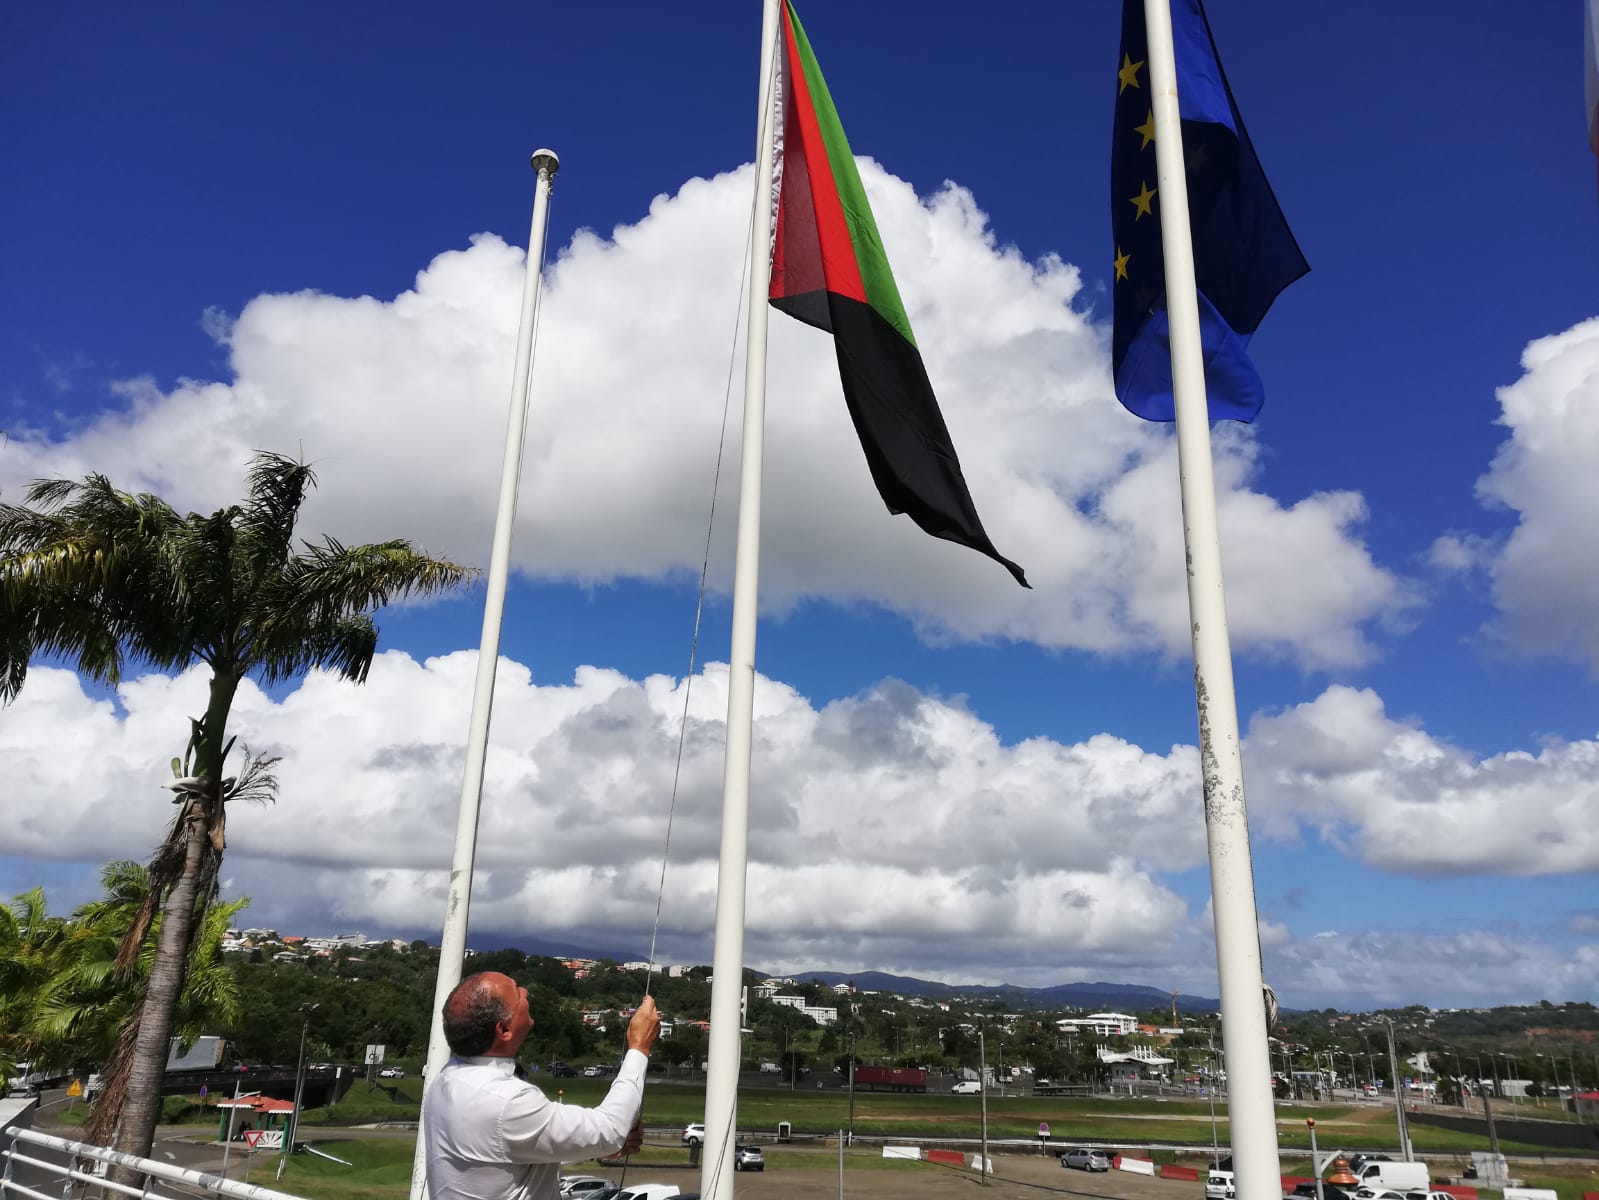     Le maire du Lamentin hisse le drapeau Rouge-Vert-Noir devant l'hôtel de ville

